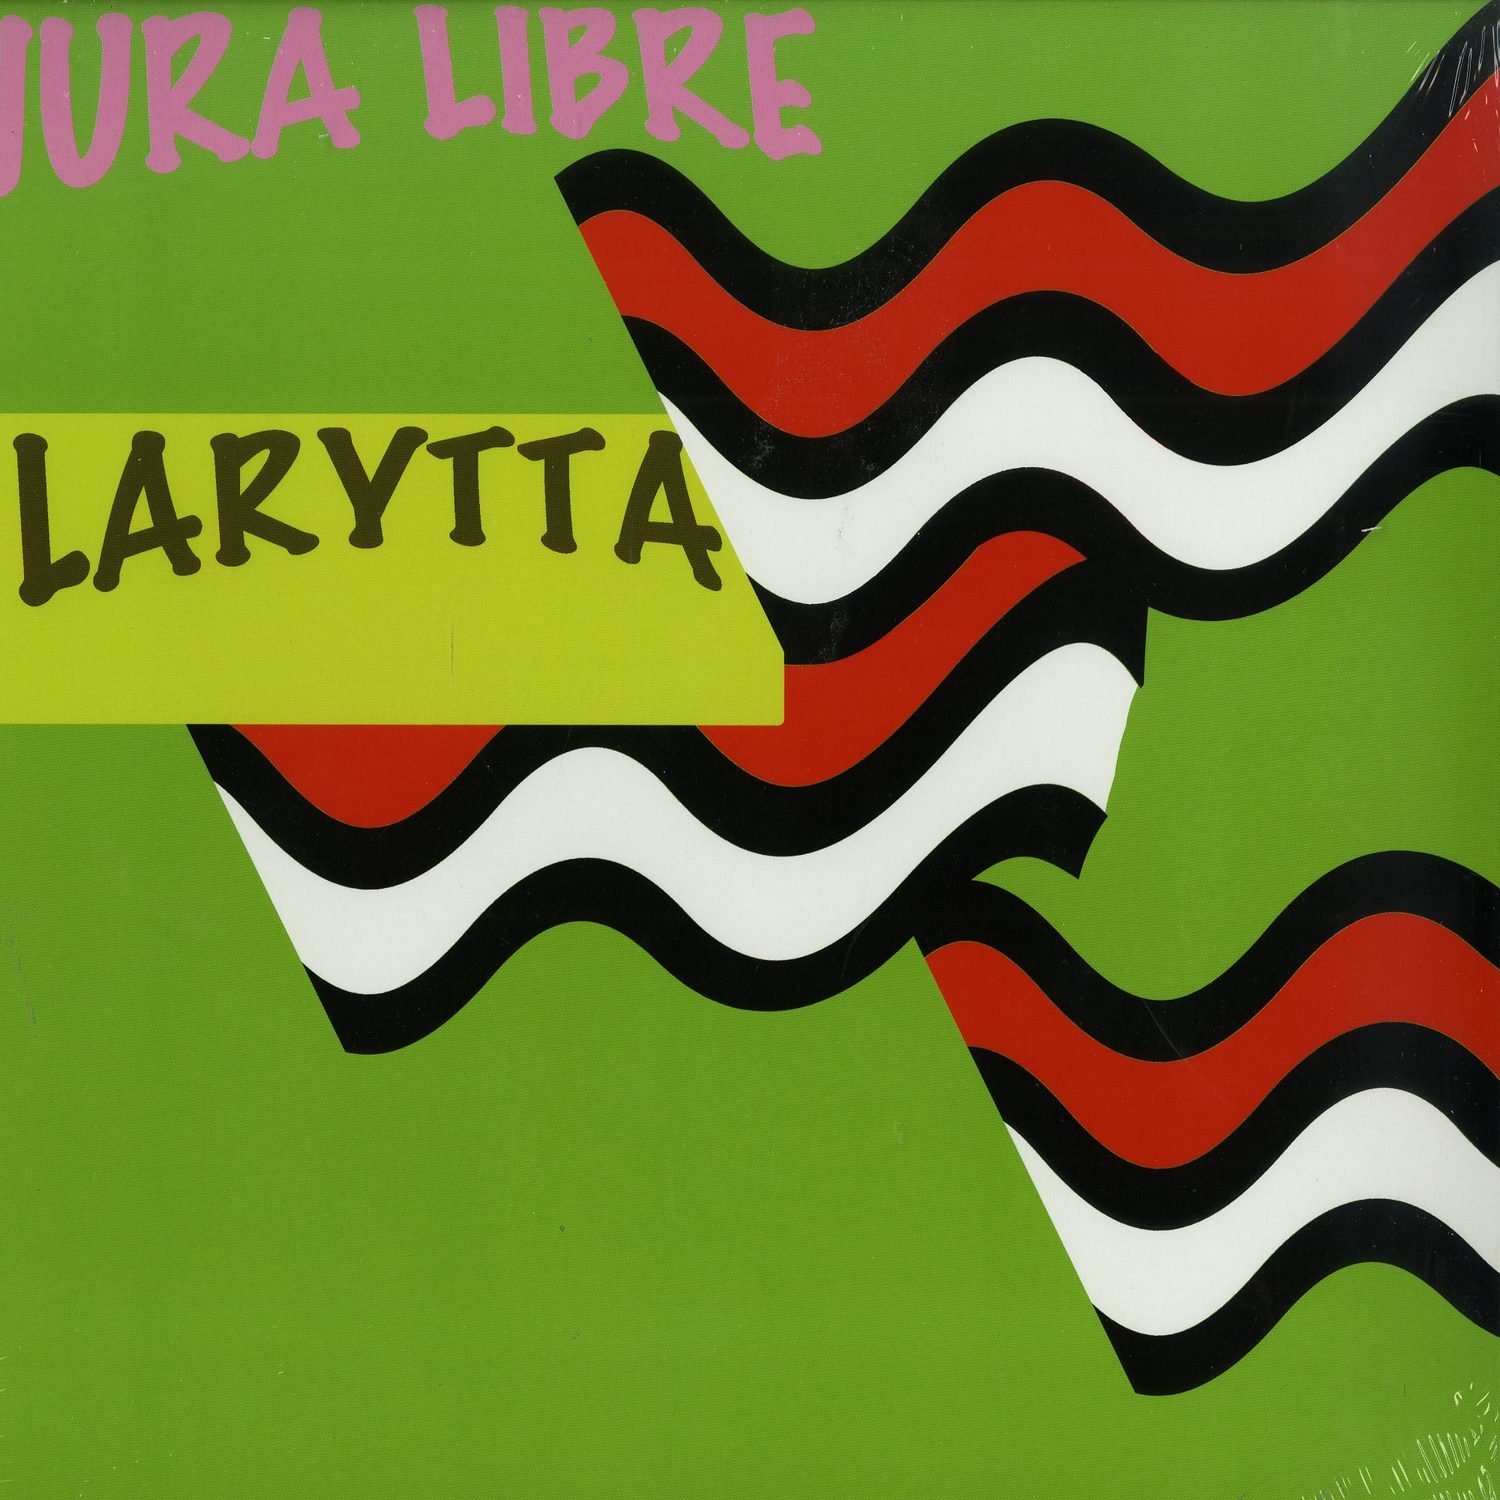 Larytta - JURA LIBRE